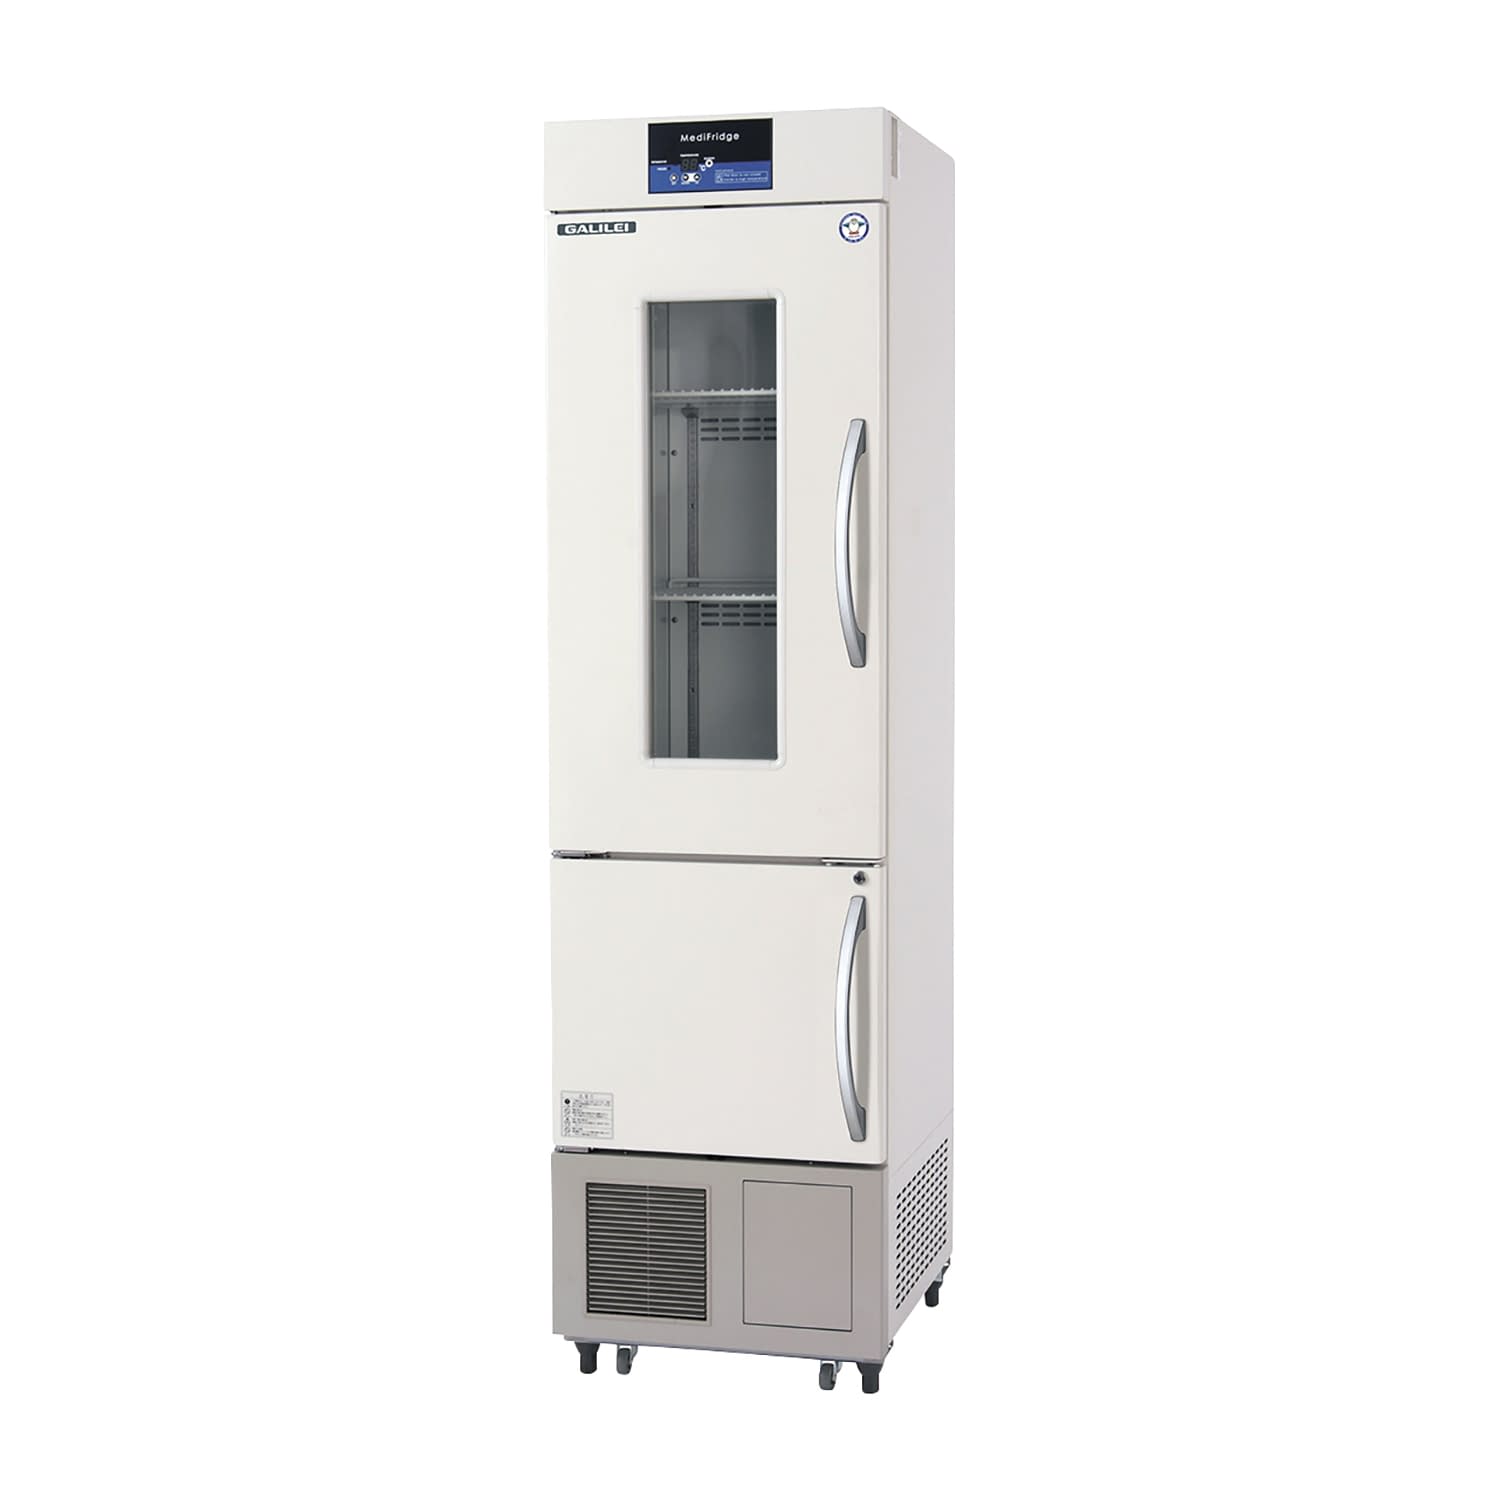 薬用冷凍冷蔵庫 FMS-F155GSX(62／174L) 1台 フクシマガリレイ アイボリー(標準色) カラーオレンジ25-5515-0004 保冷庫 検査室 薬用保冷庫